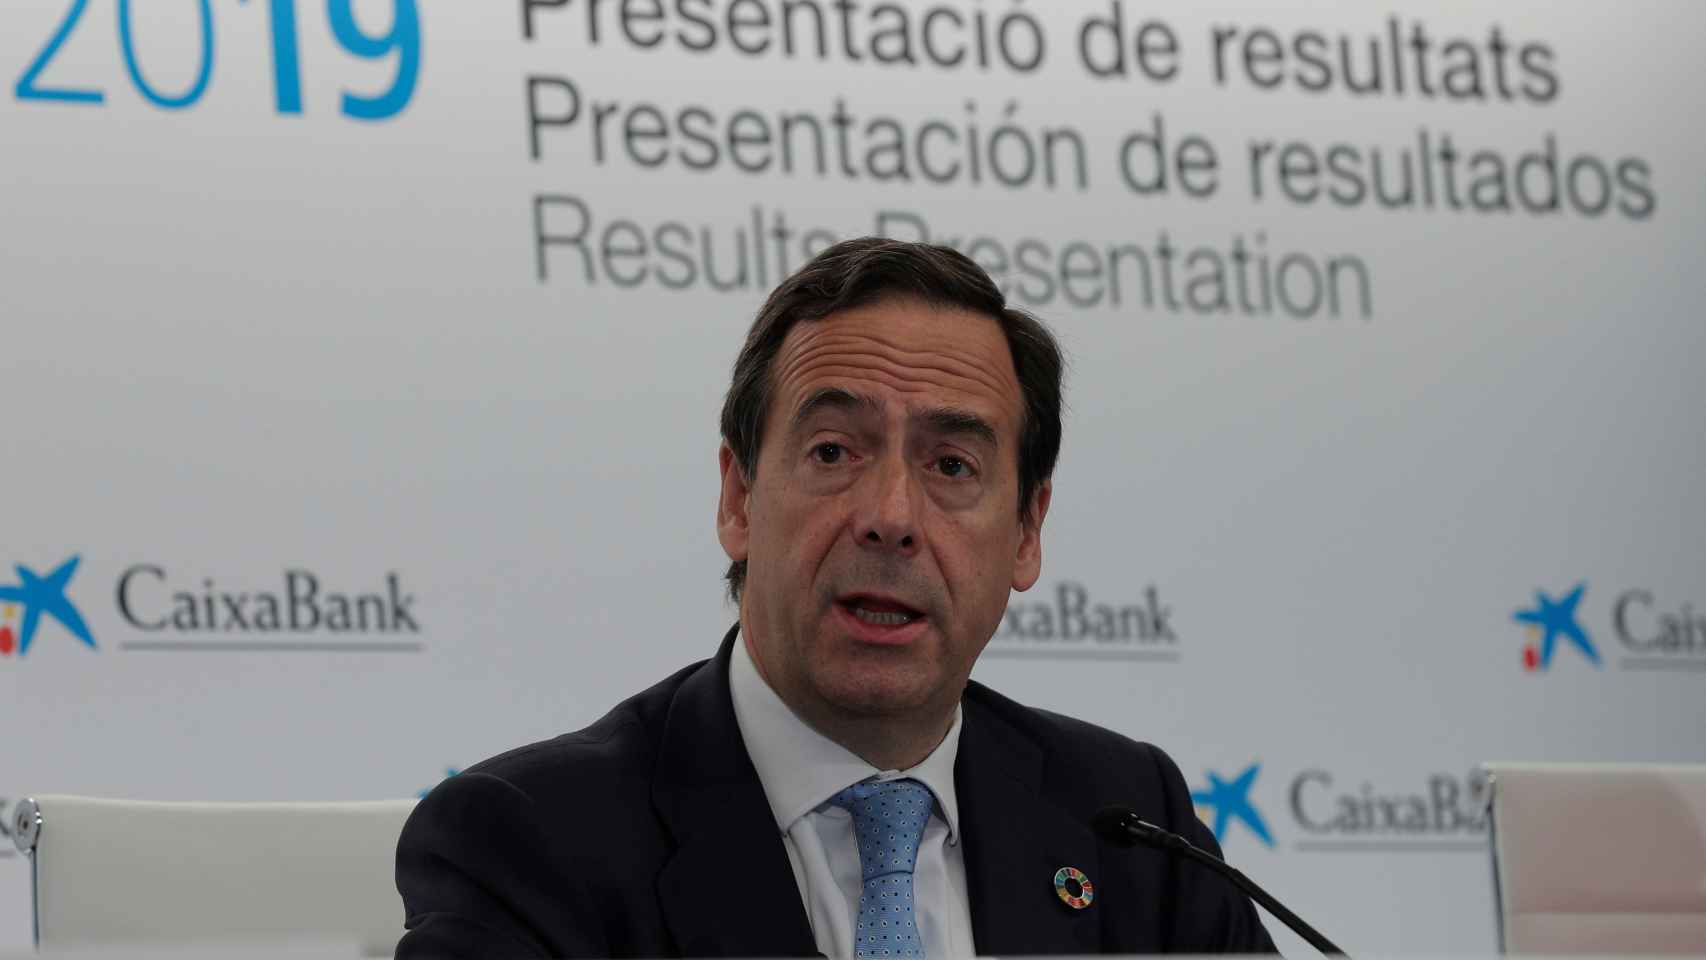 Gonzalo Gortázar, CEO de Caixabank, en la presentación de resultados.